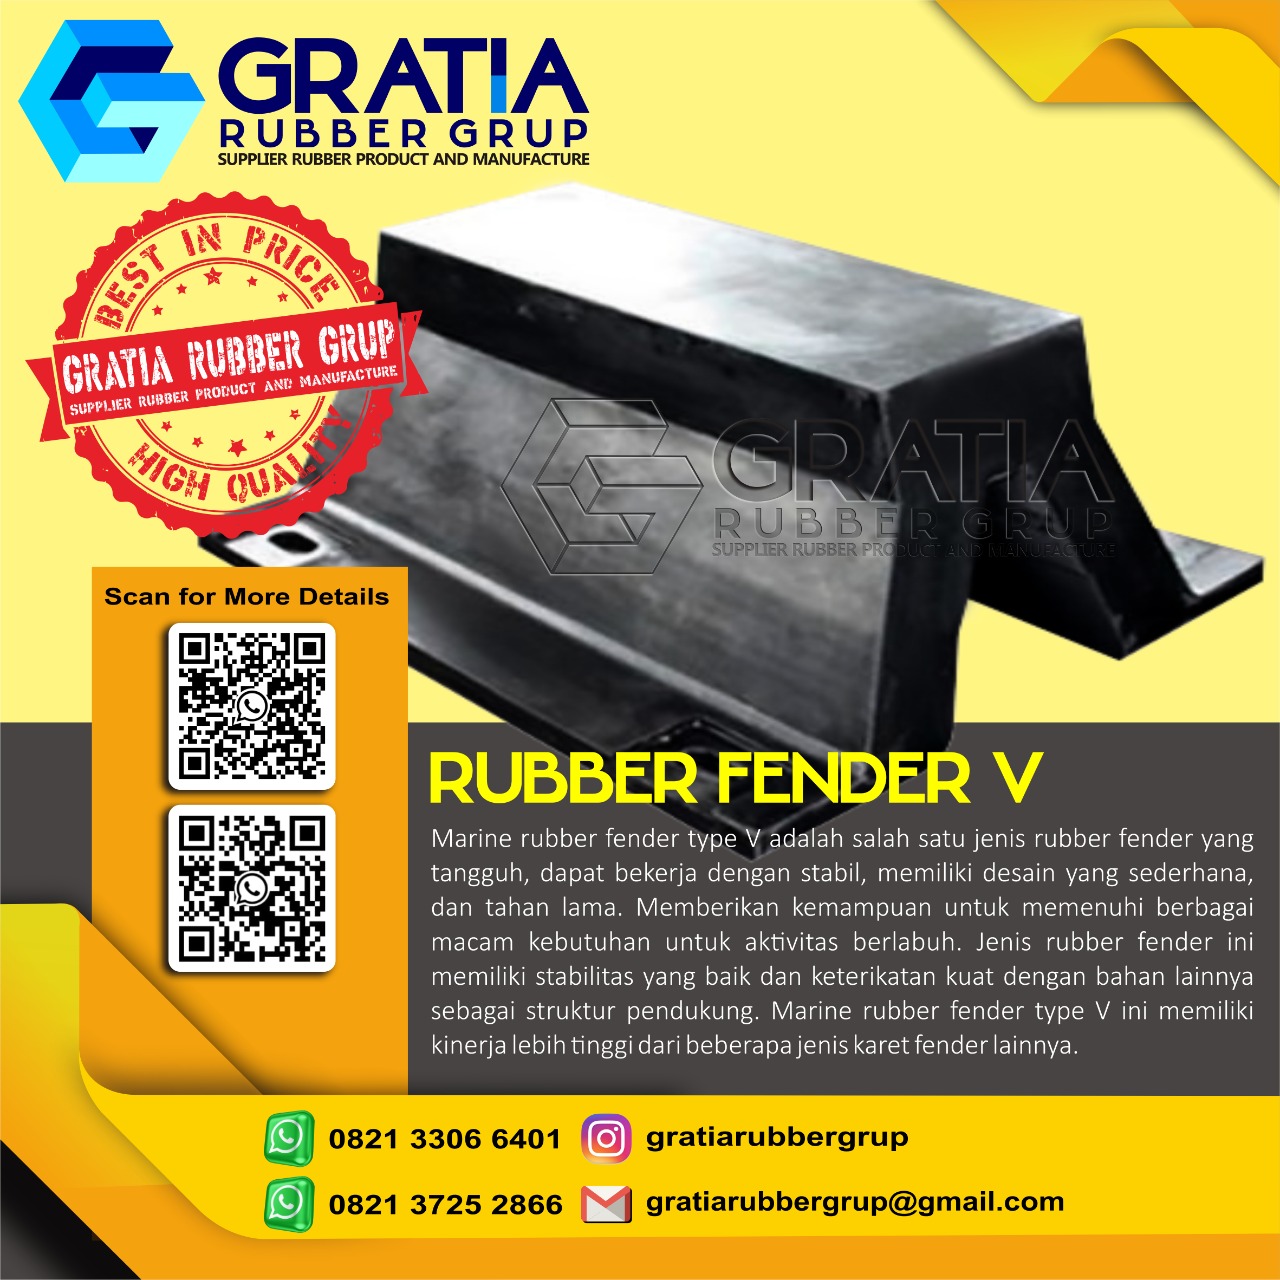 Distributor Rubber Fender Terbaik  Melayani Pengiriman Ke Lubuklinggau Sumatera Selatan Hub 0821 3306 0461